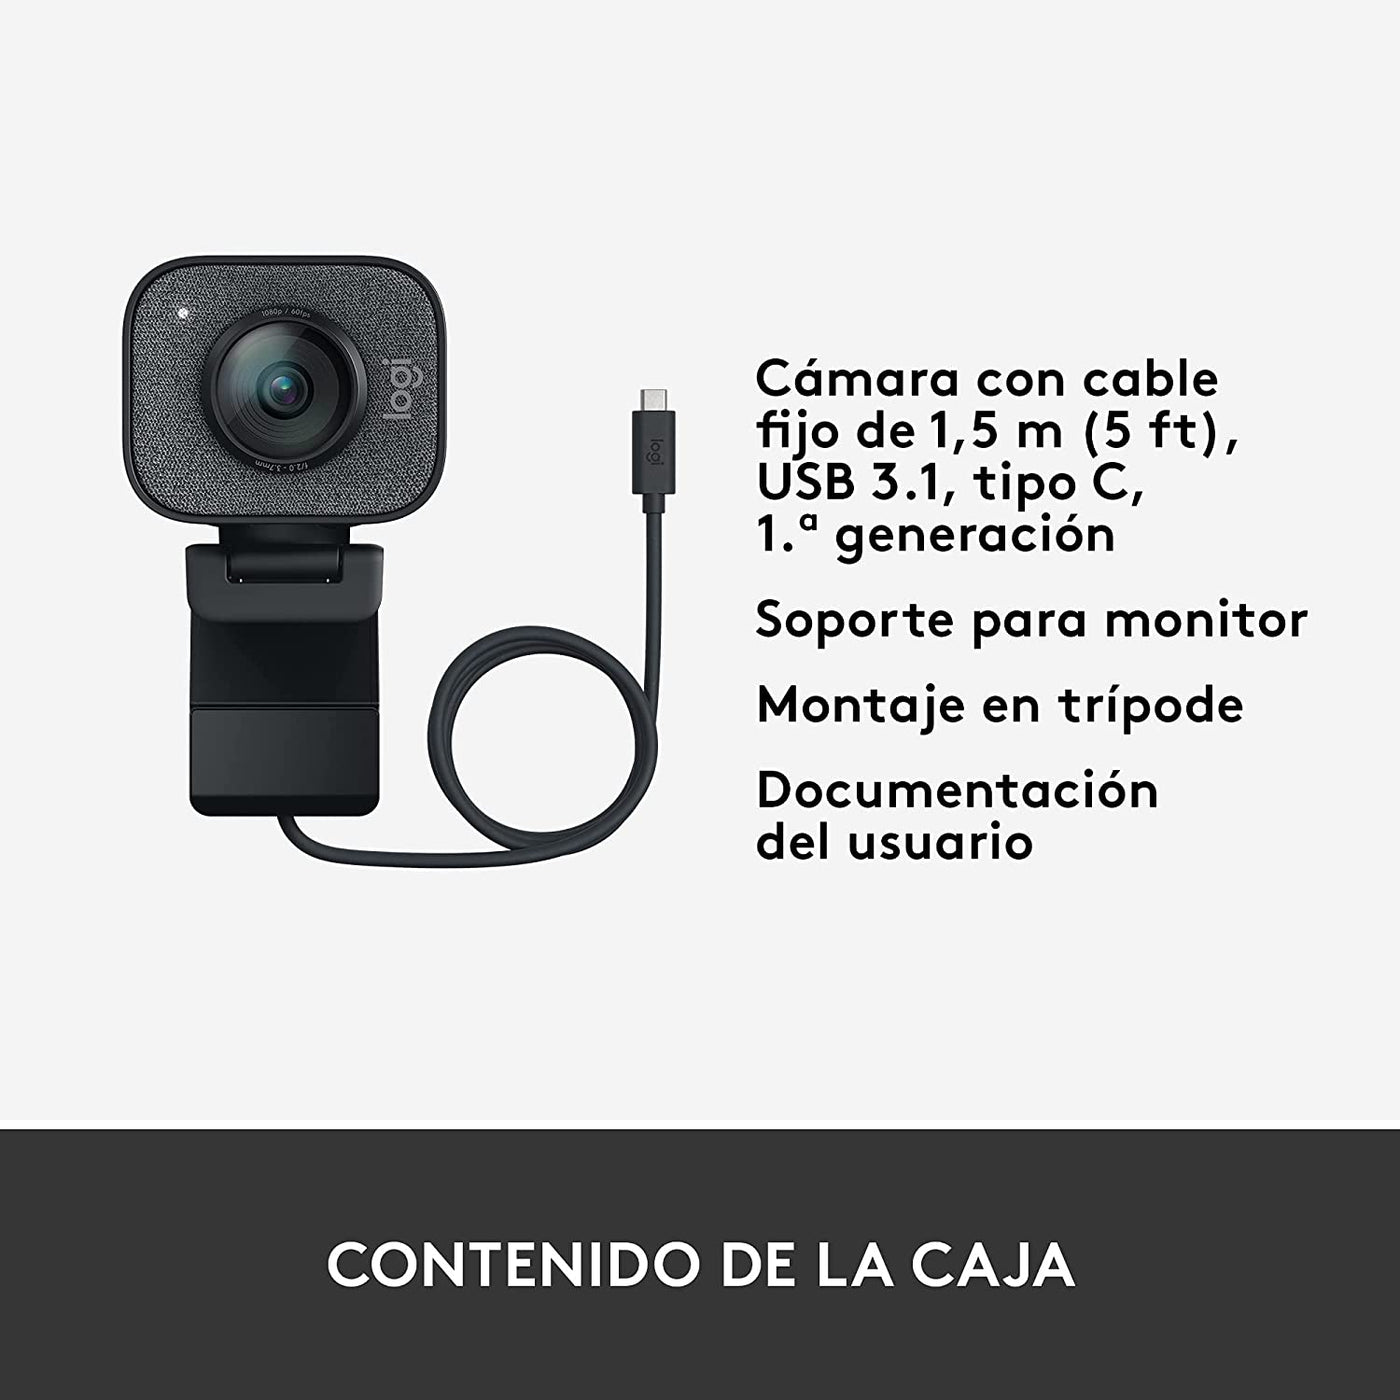 Webcam Logitech Streamcam Plus 1080P 60FPS